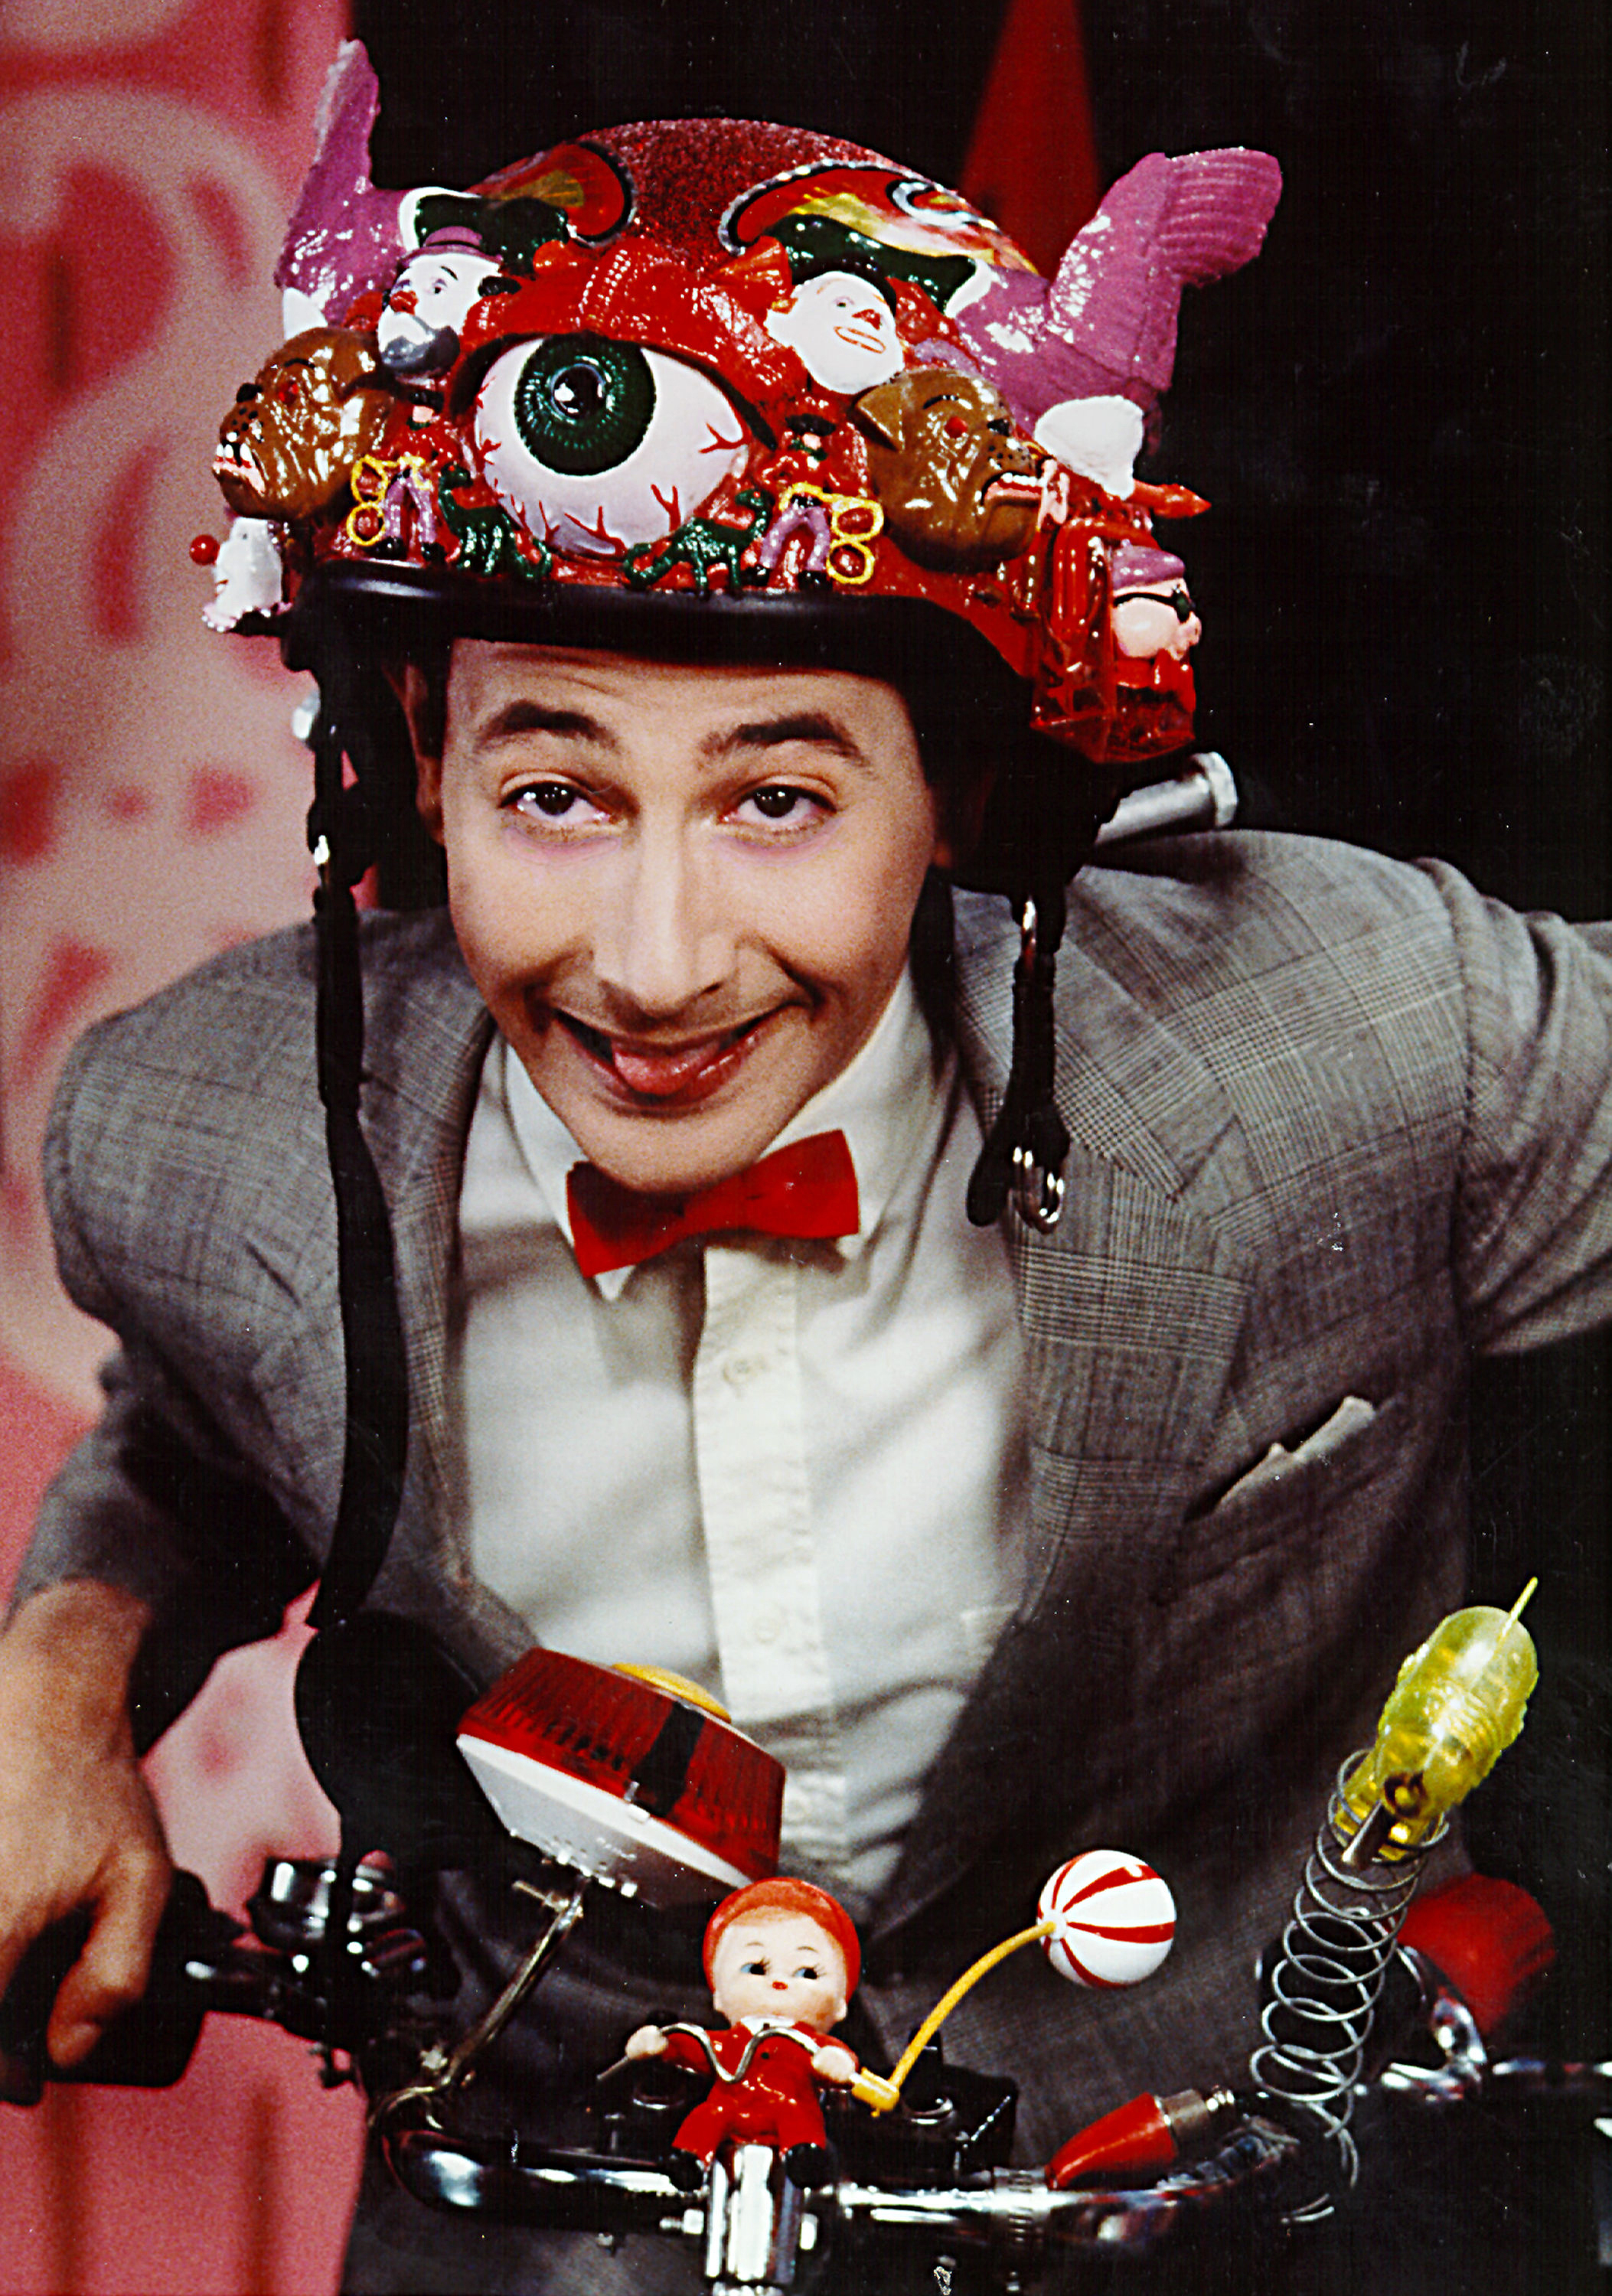 Closeup of Pee-wee Herman on his bicycle